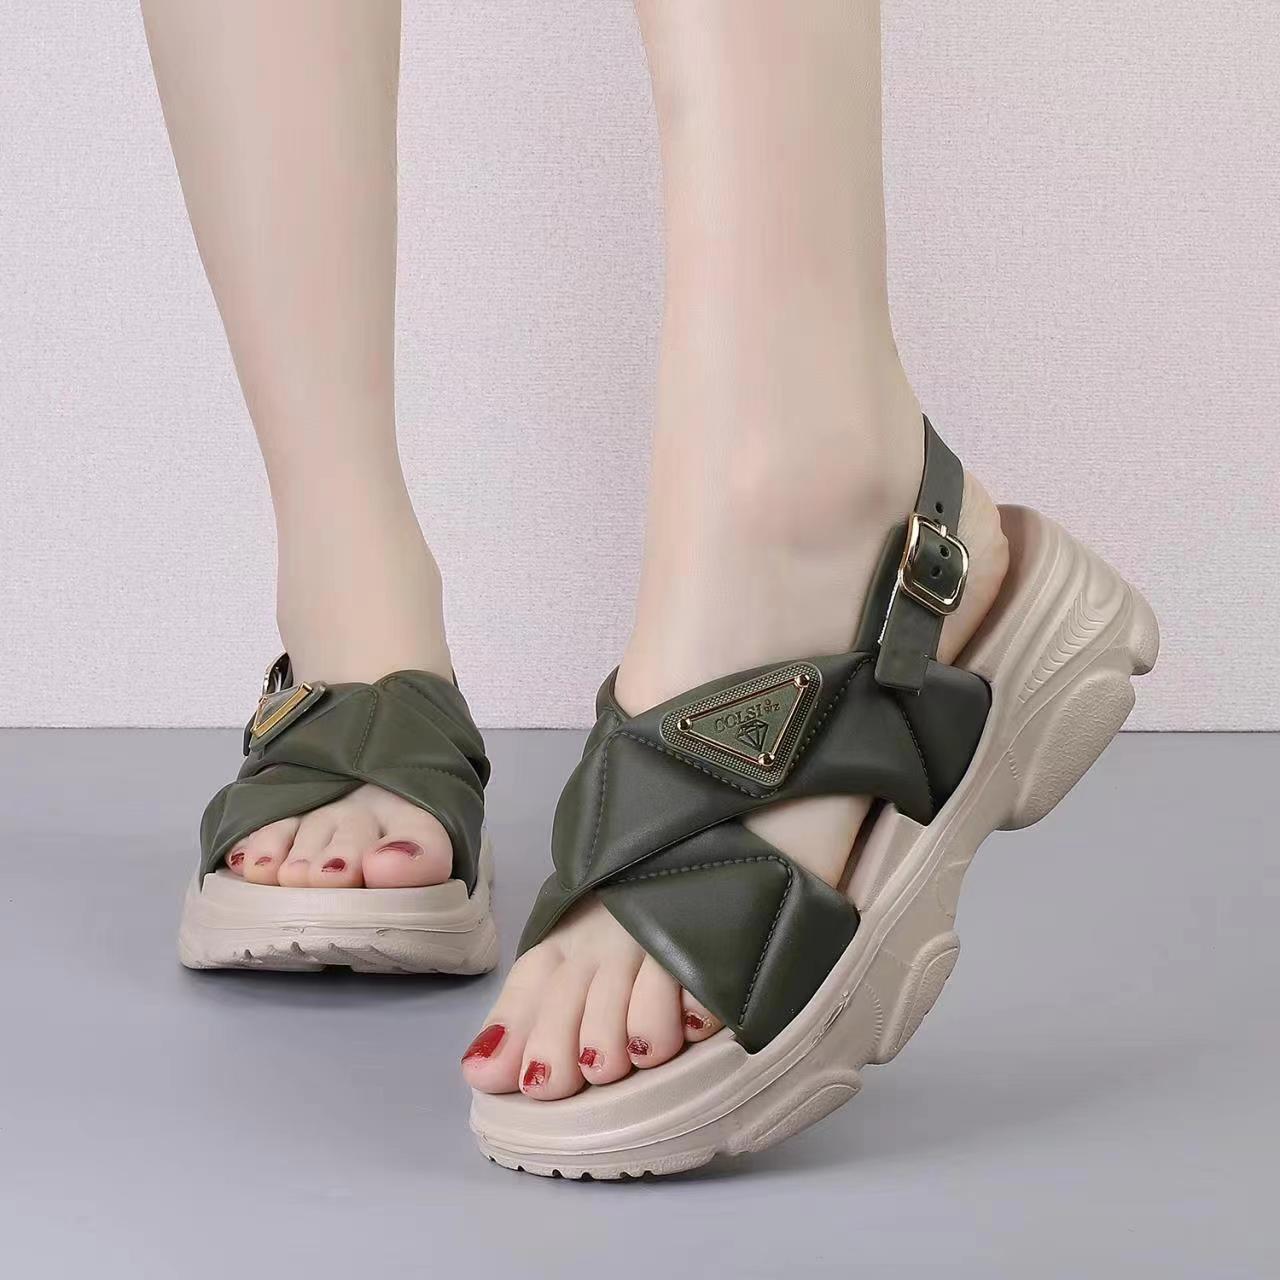 Vkc Pride / Walkaroo New Model Ladies Slippers & Sandal 2022 - YouTube-thephaco.com.vn